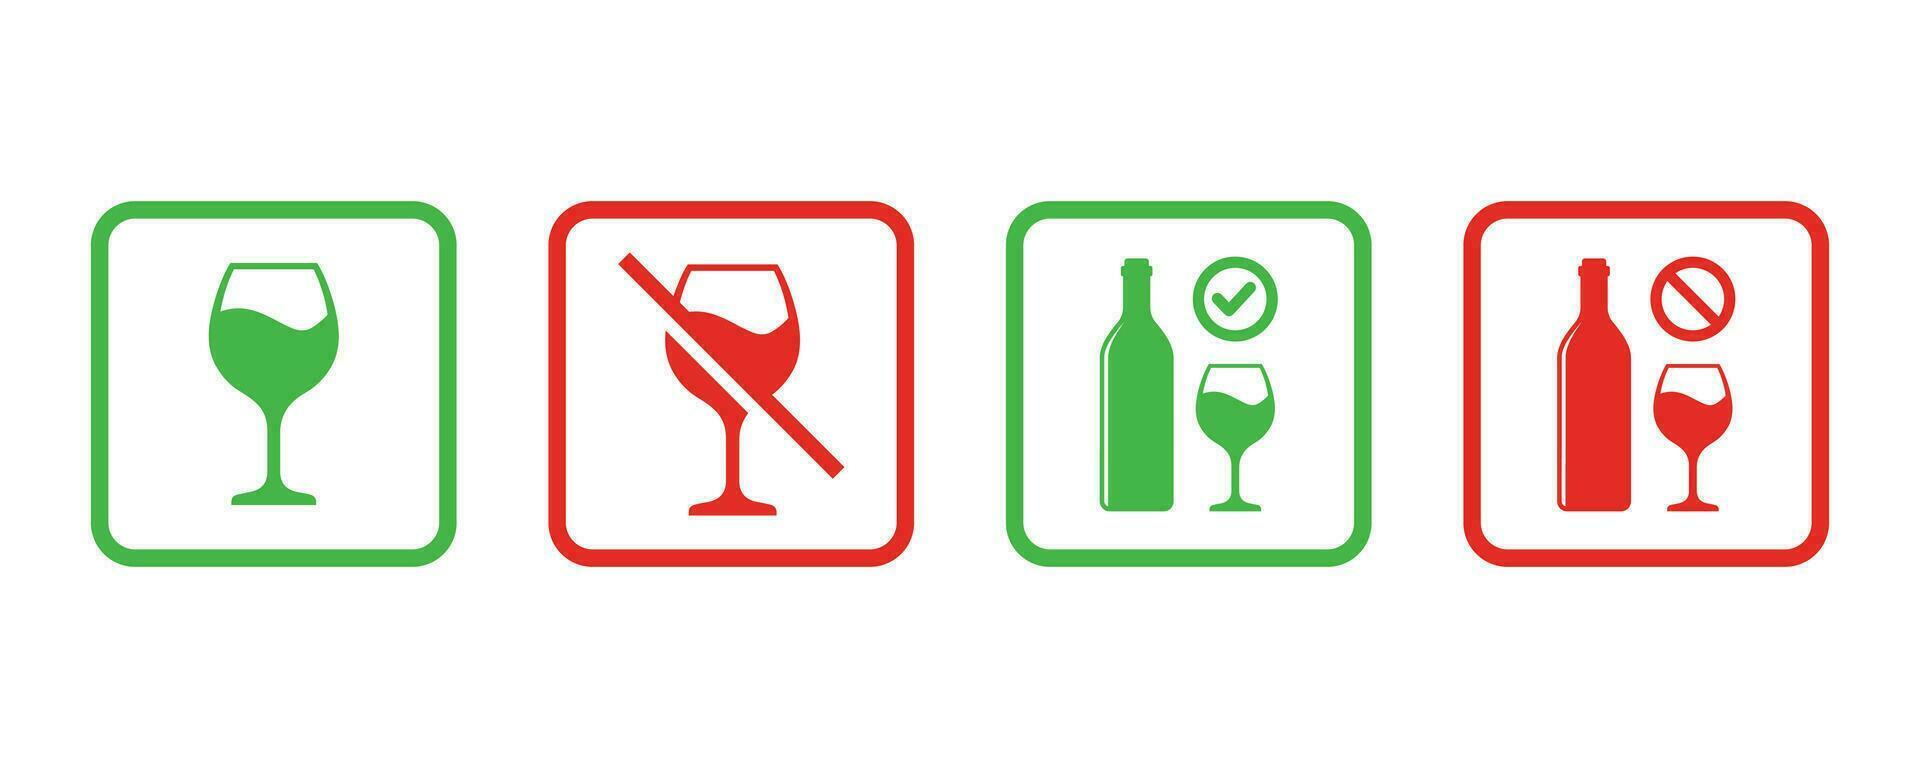 Nein Alkohol Zeichen und Alkohol erlaubt Zeichen Symbol Vektor Illustration. Verbot Zeichen einstellen zum Alkohol. Vektor Illustration